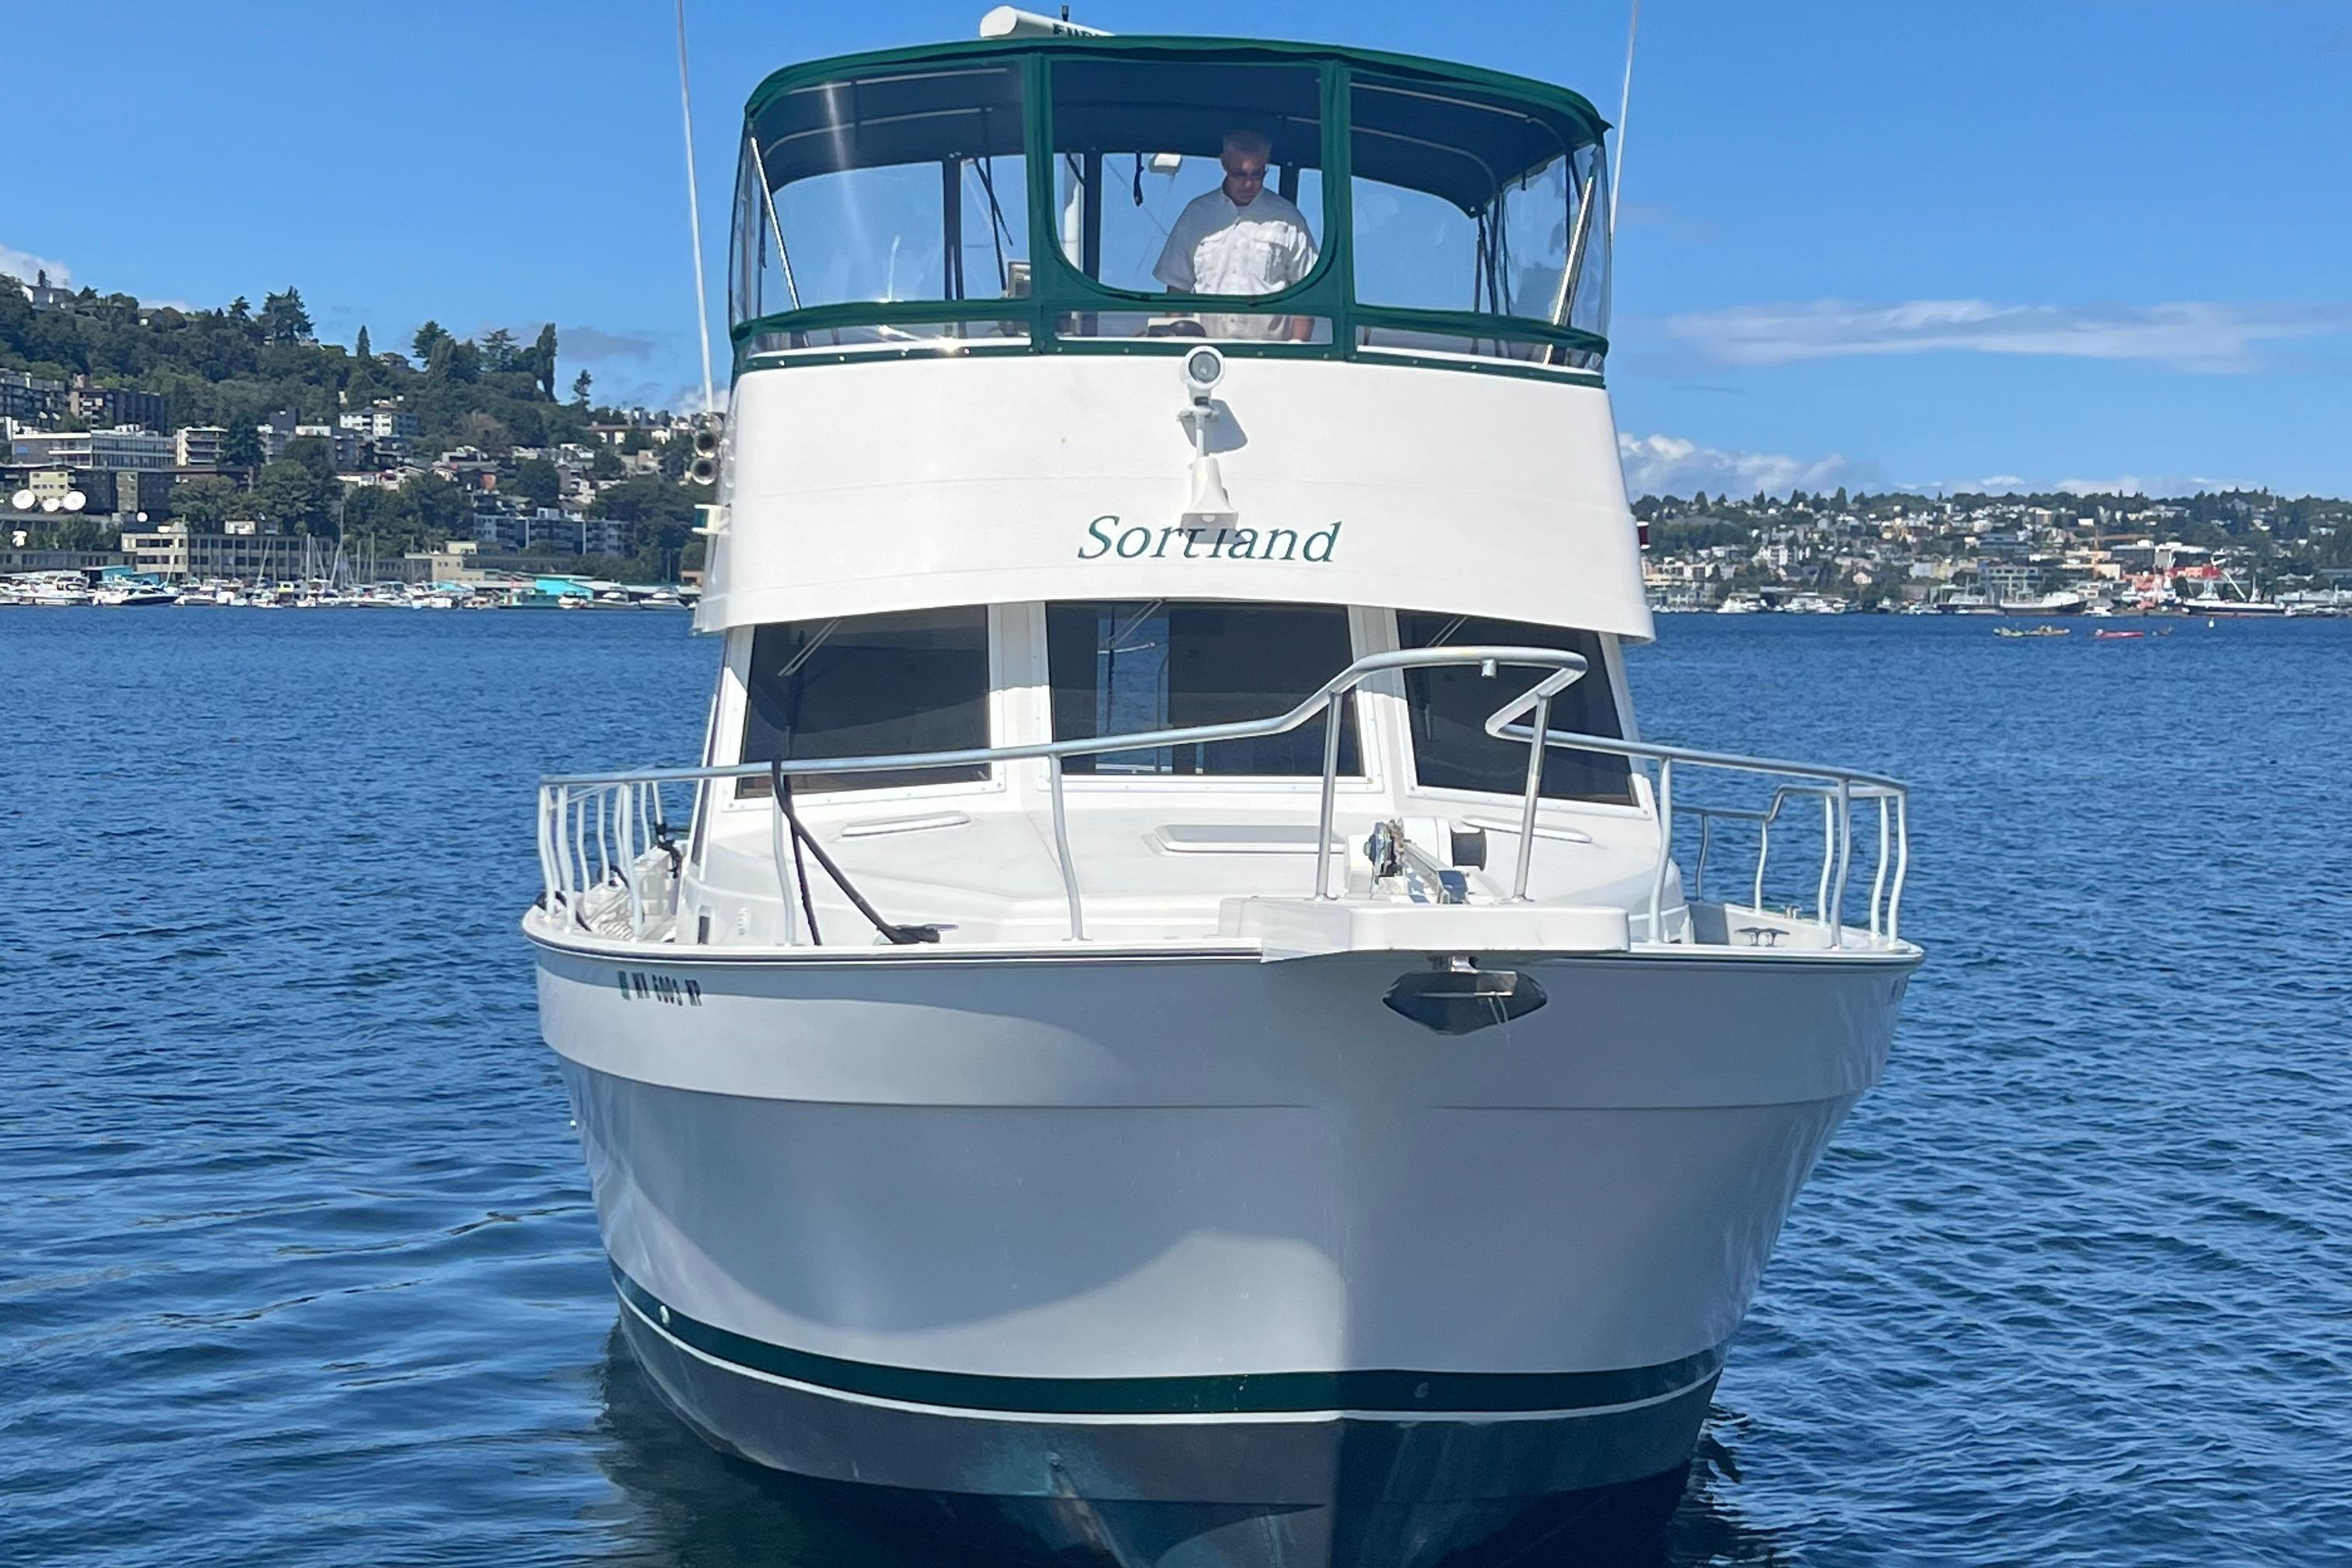 Sortland Yacht for Sale, 43 Mainship Yachts Seattle, WA